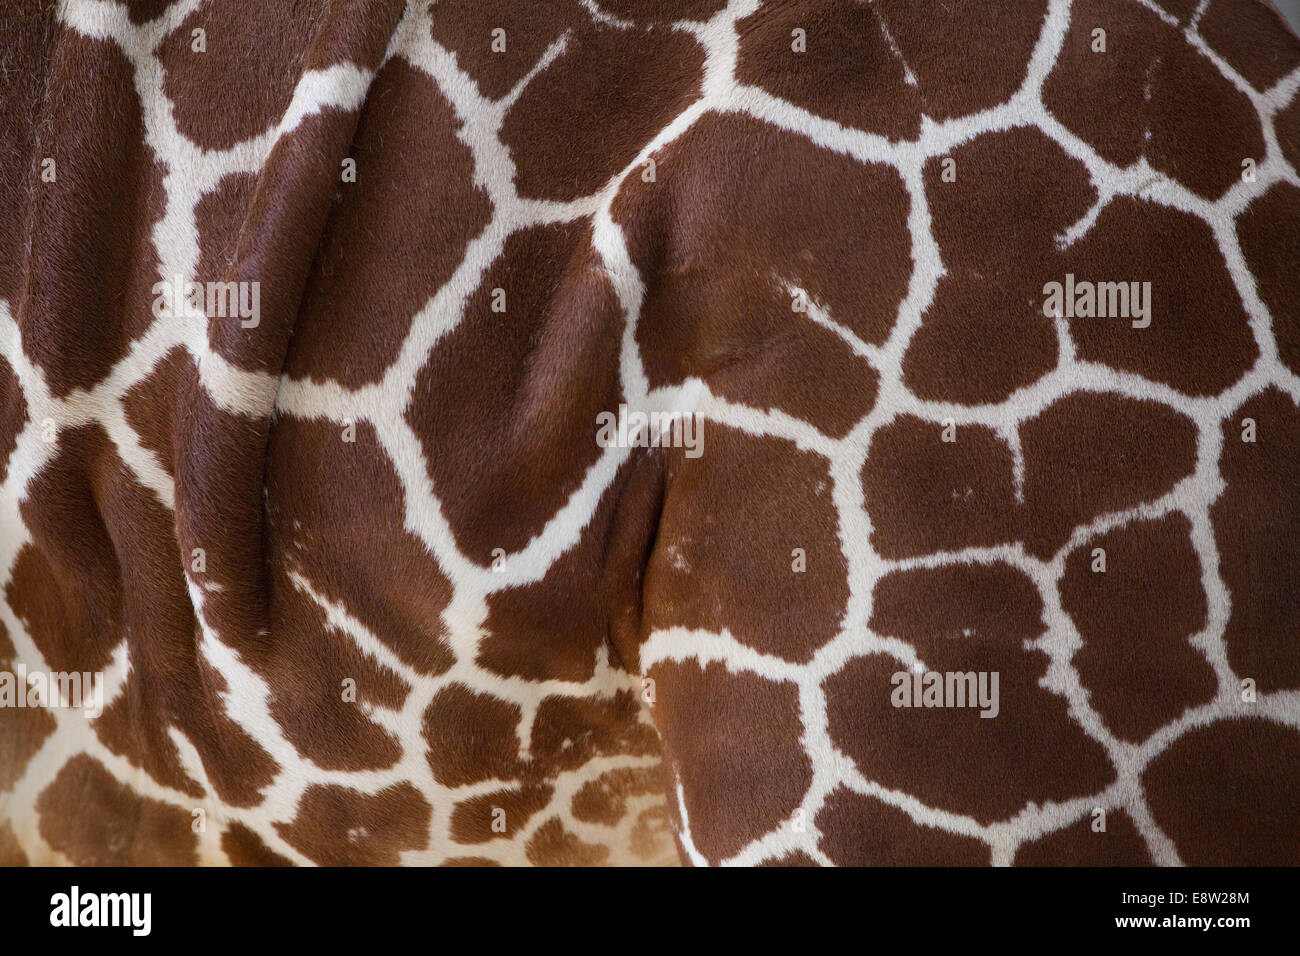 Giraffe réticulée (Giraffa camelopardalis reticulata). Côté gauche, le flanc,. Marquages typiques de cette sous-espèce. Banque D'Images